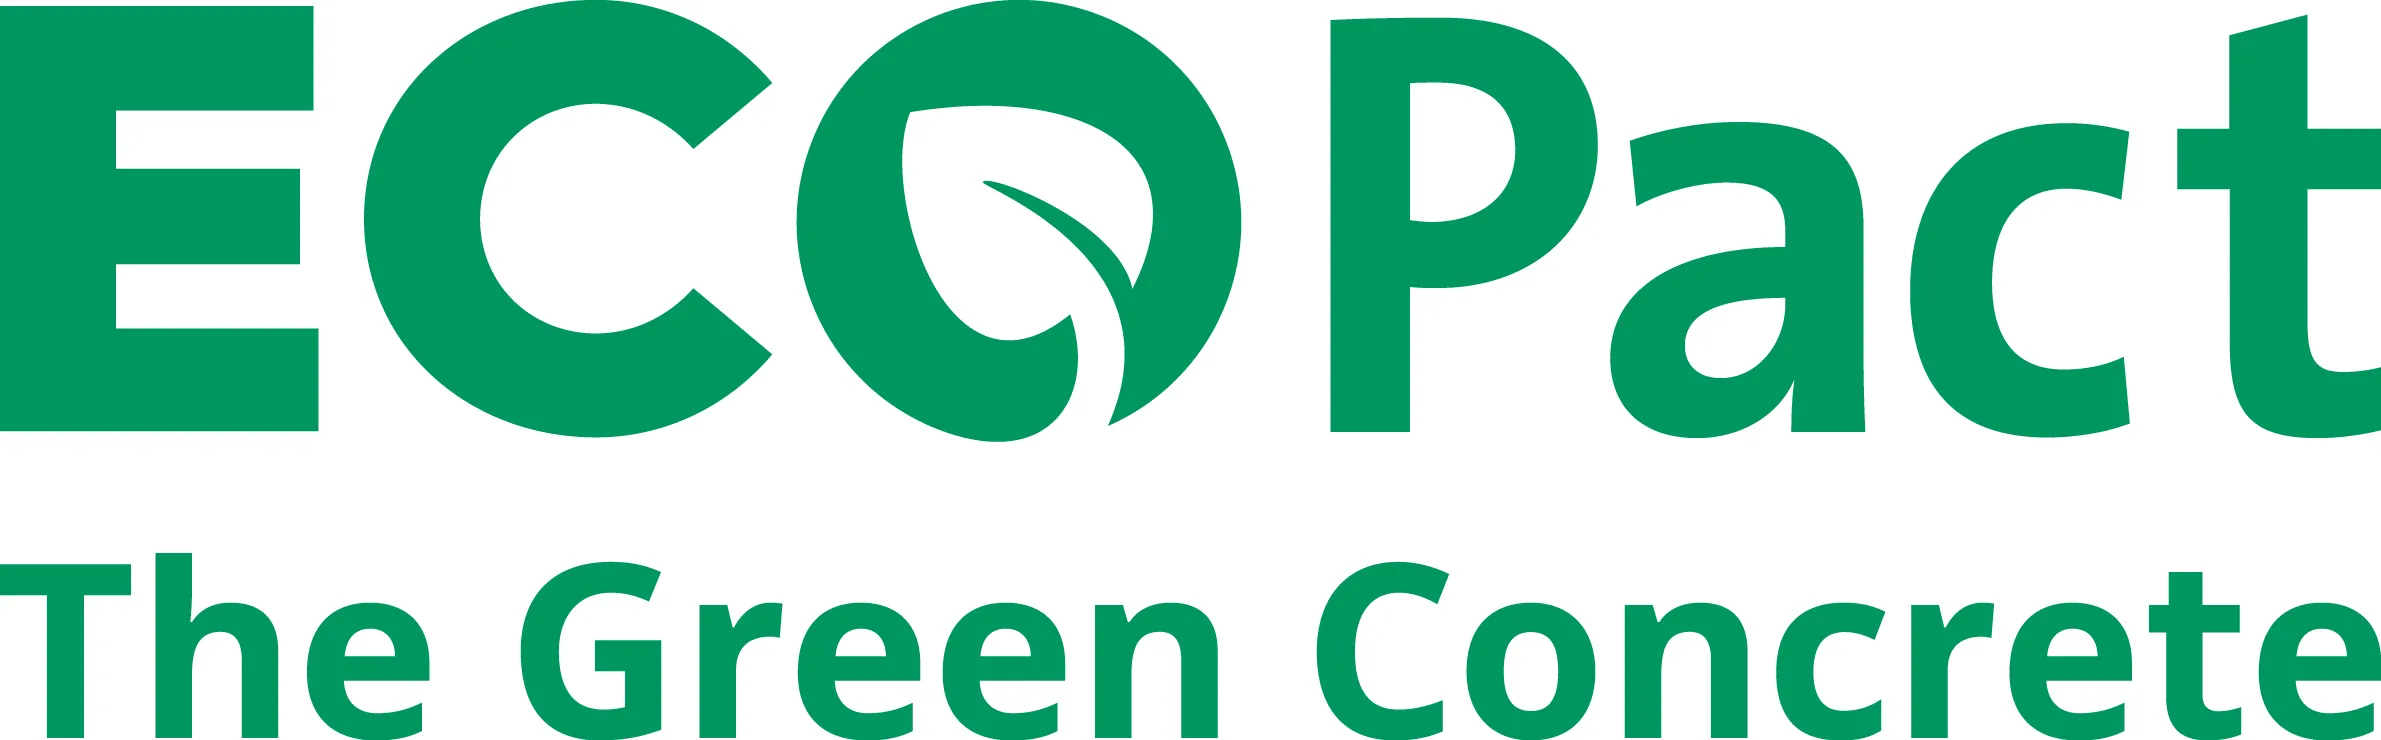 ECOPact the Green Concrete Logo